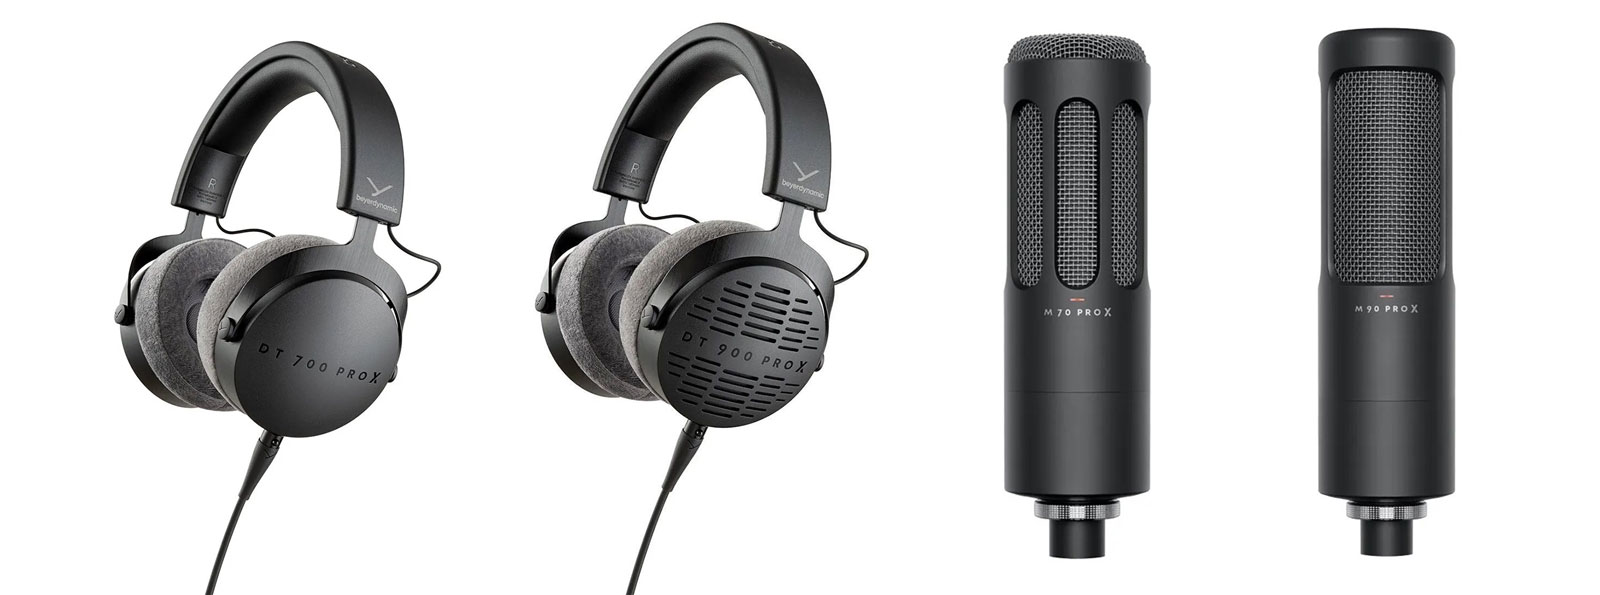 Beyerdynamic Pro X es la nueva serie de auriculares y micrófonos que ofrecen una alta calidad de sonido con prestaciones modernas